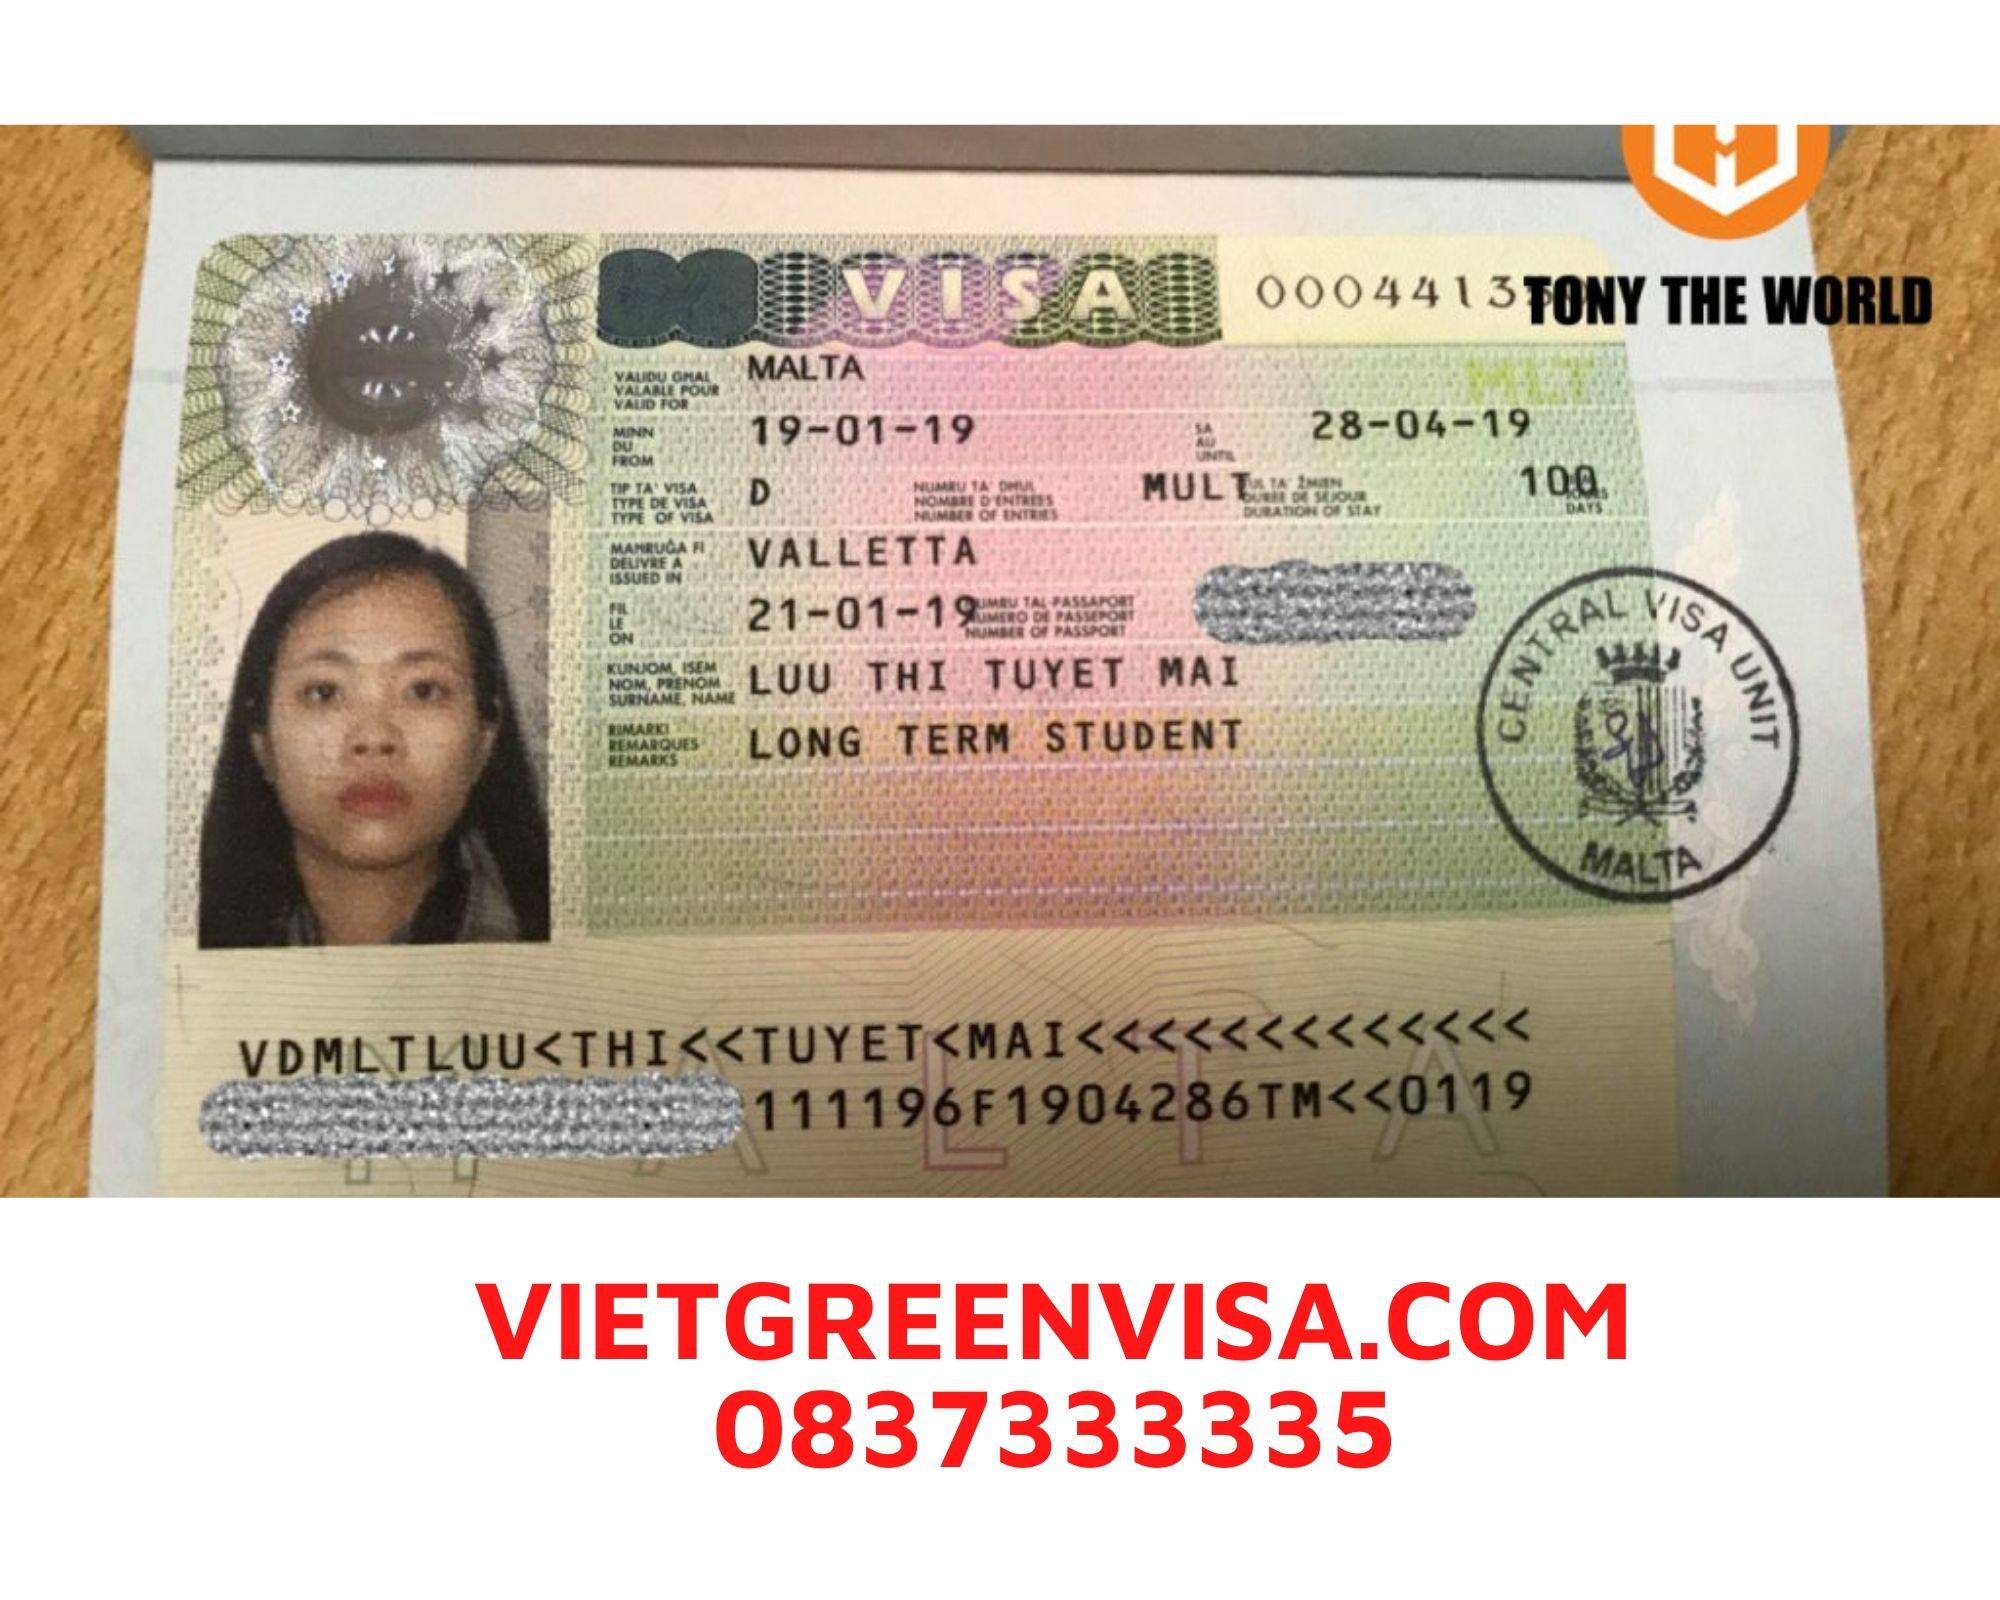 Dịch vụ xin visa Malta công tác trọn gói, uy tín